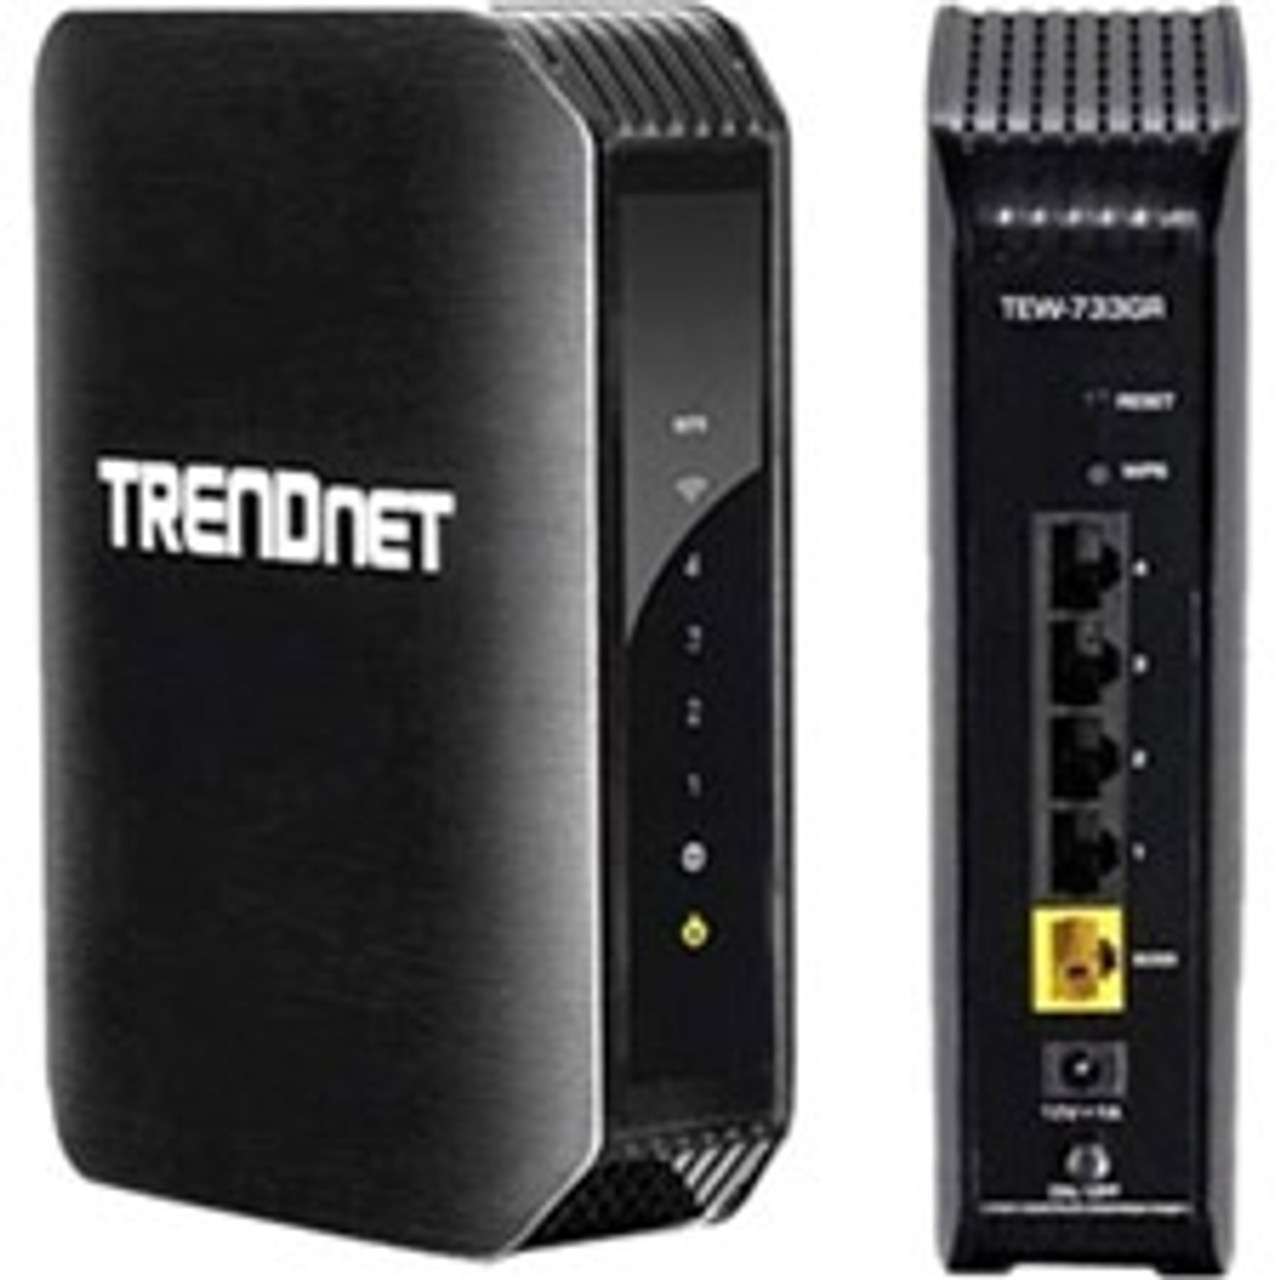 Device extension. Роутер TRENDNET GREENNET. Wi-Fi роутер TRENDNET TEW-733gr.